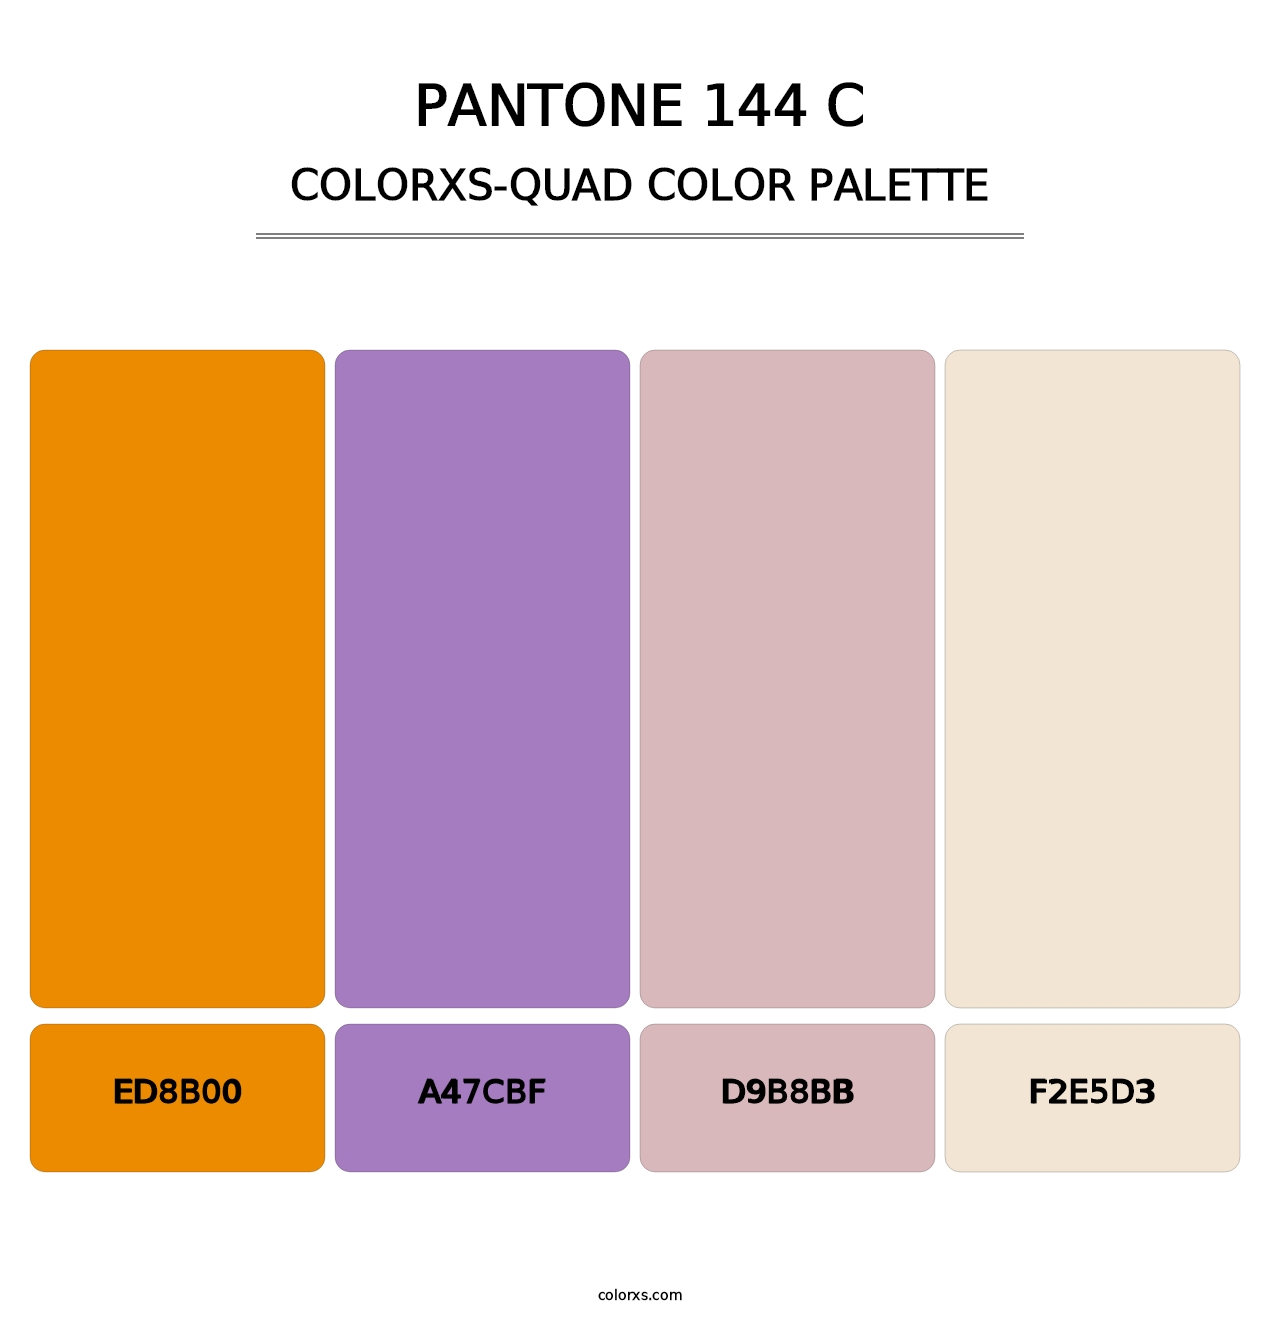 PANTONE 144 C - Colorxs Quad Palette